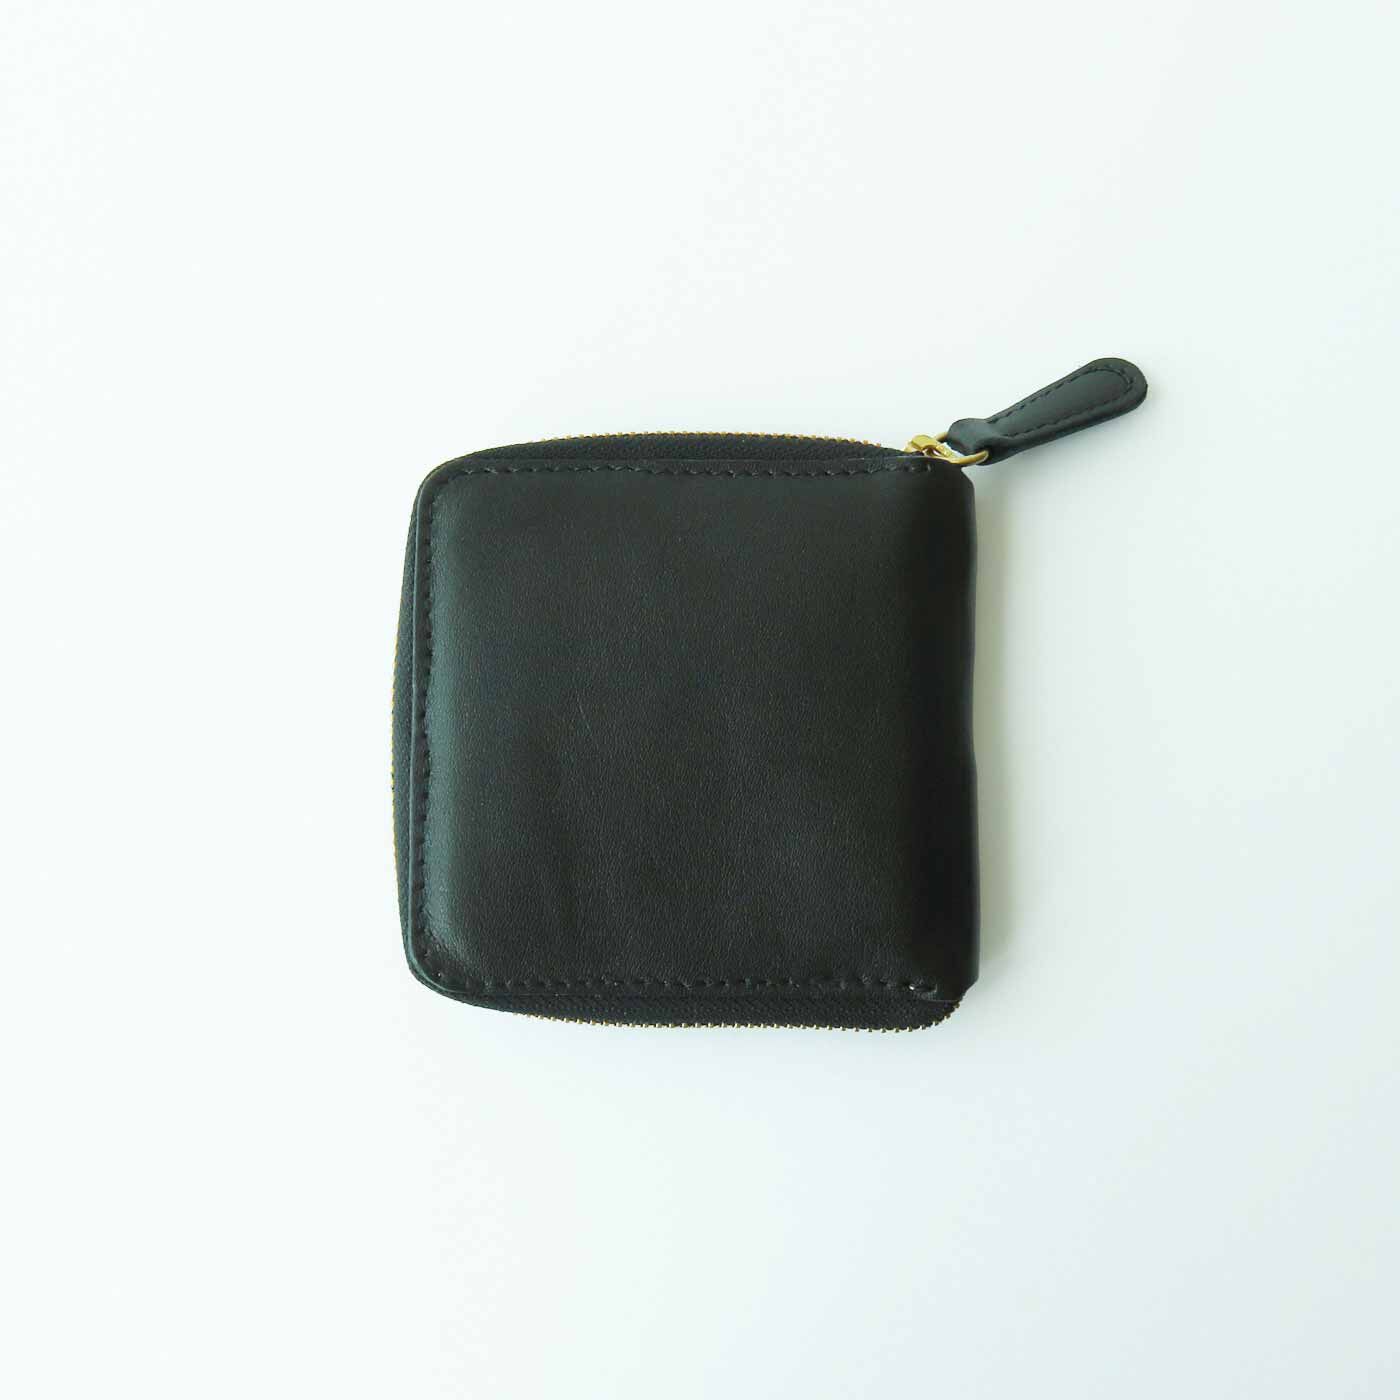 ＆Stories|福岡の鞄作家と作った 職人本革のラウンドジップ折り財布〈ブラック〉|表はクロームでなめした定番のブラックレザーです。革でバックなどに使うことの多い革なので、傷や大きなシワは少なめです。